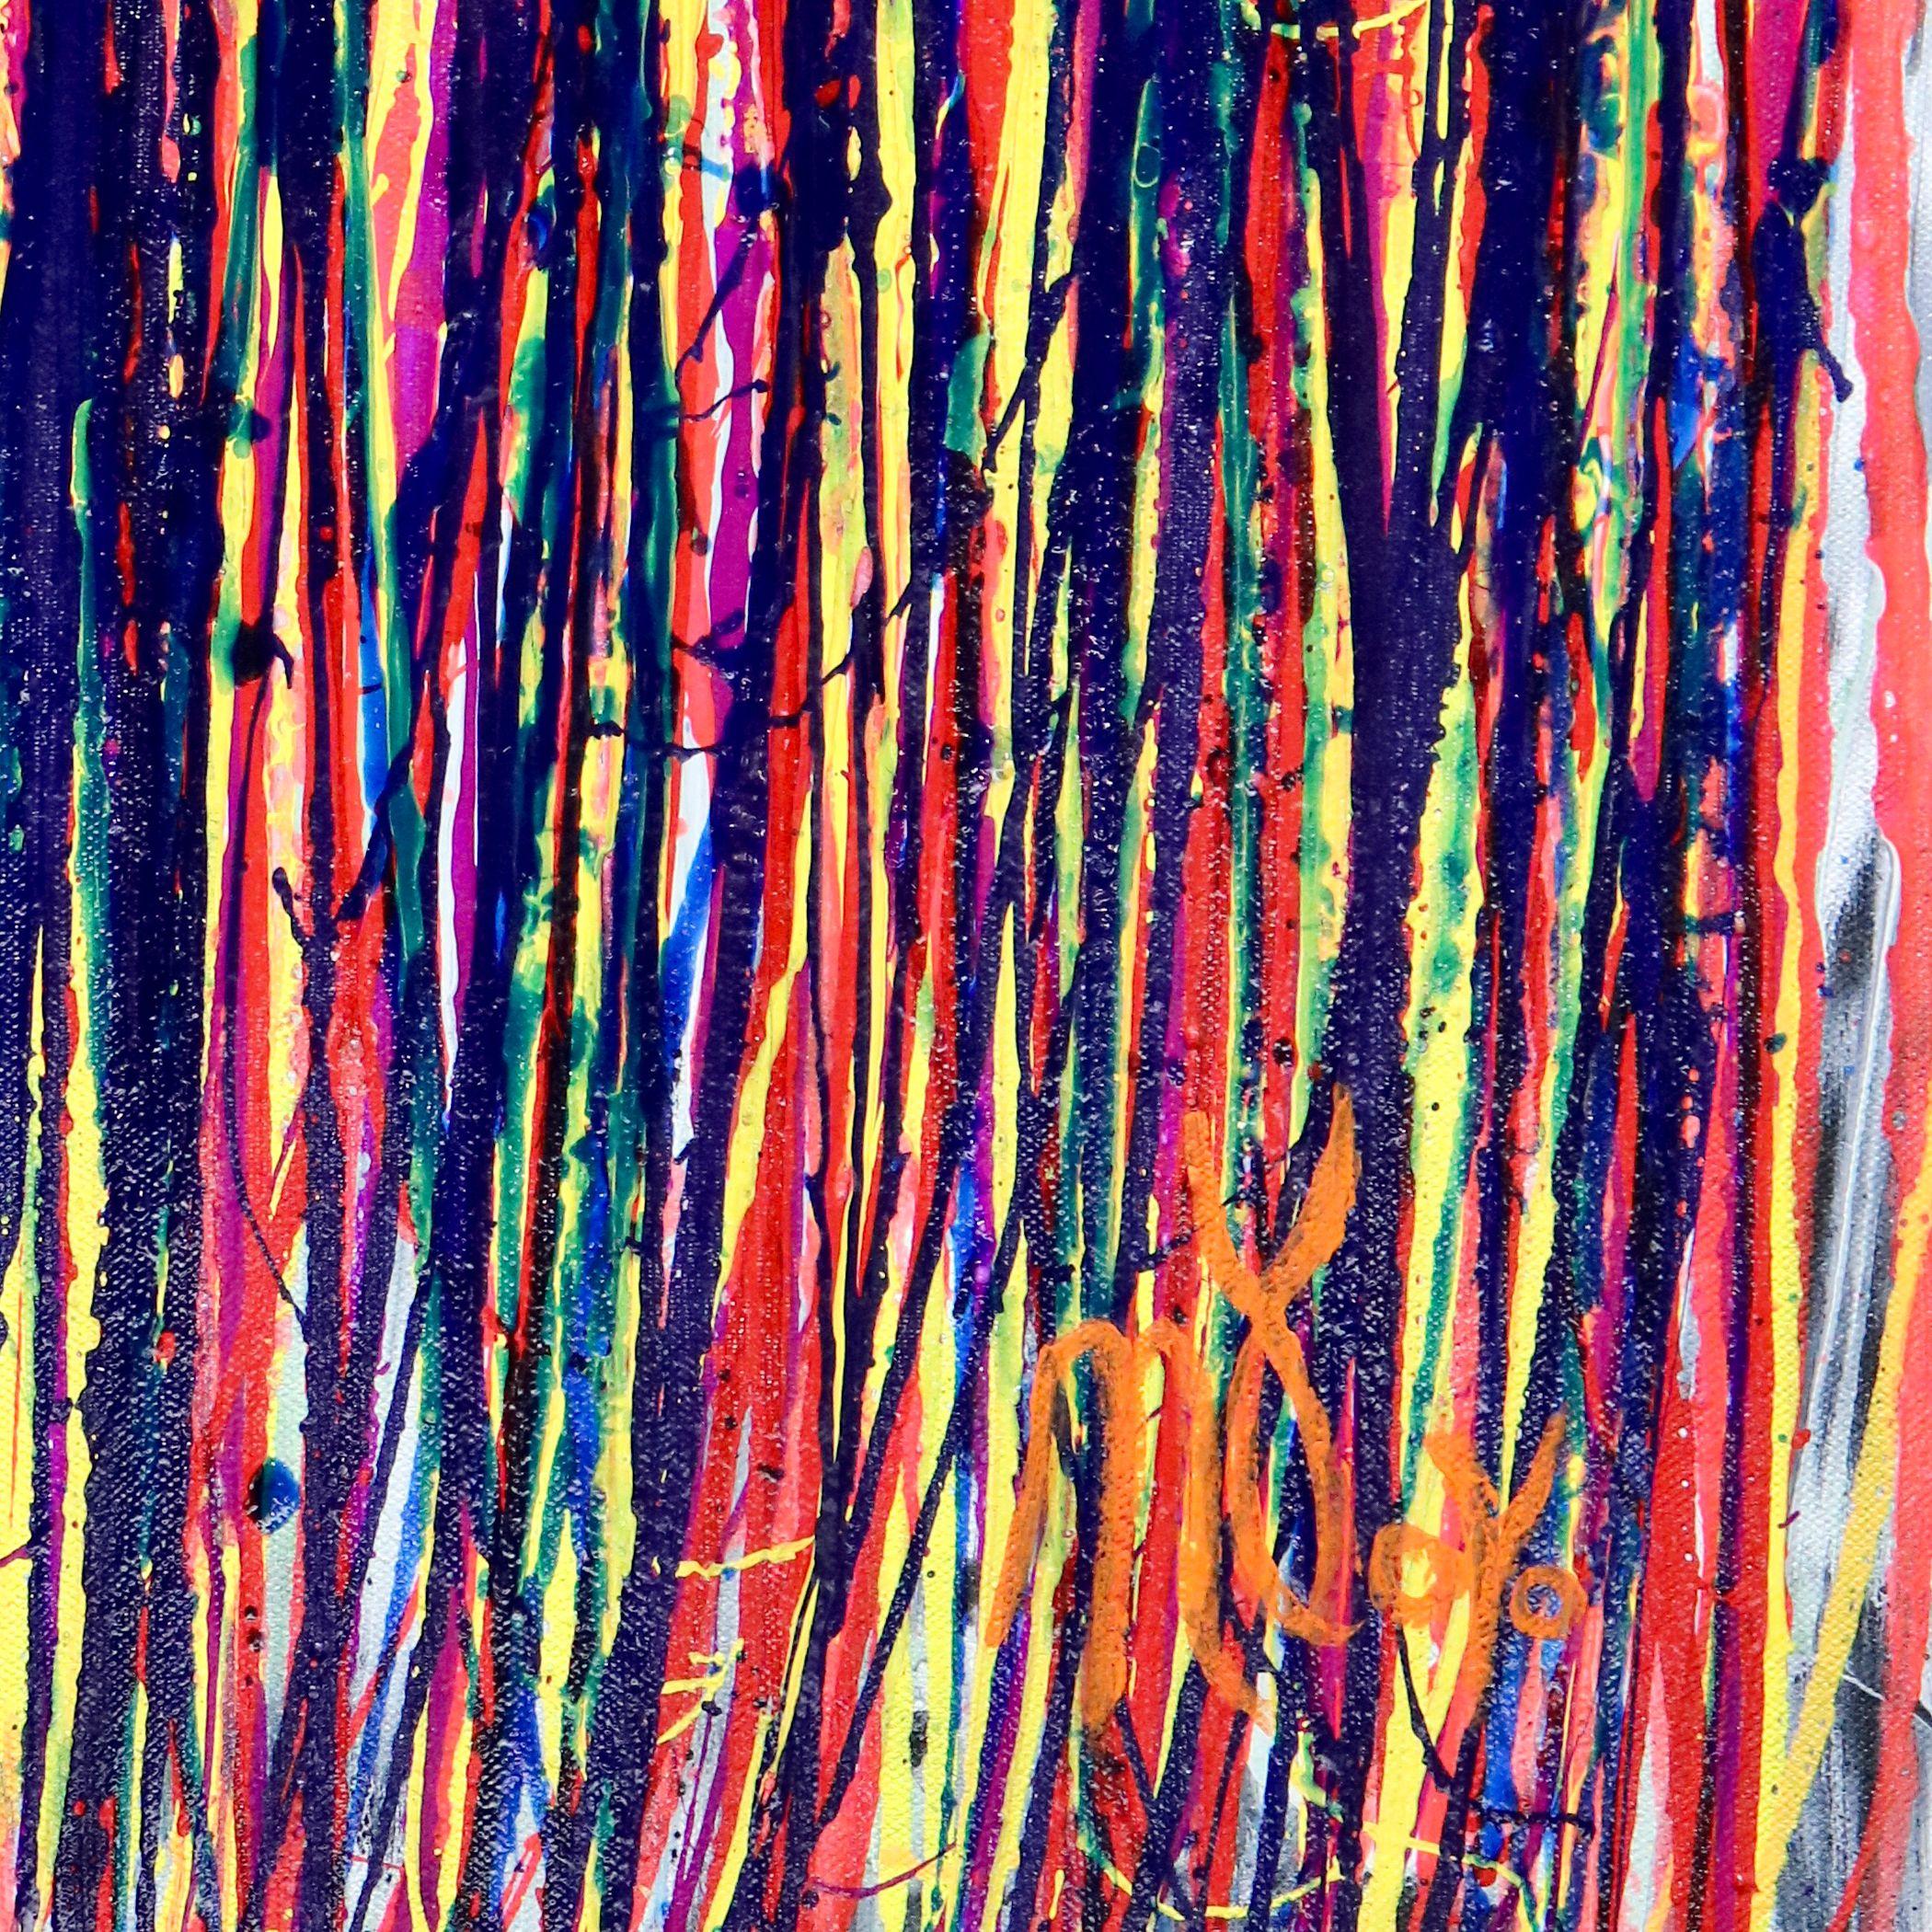 Acryl auf Leinwand    Energetisch, wirkungsvoll, kühn und kontemplativ, inspiriert von der abstrakten Natur. Satte, leuchtende Farben über Weiß und Schwarz. Viele Schattierungen von Blau, Pfirsich, Lila, Rot, Rosa und Gelb. Dieses Kunstwerk ist voll